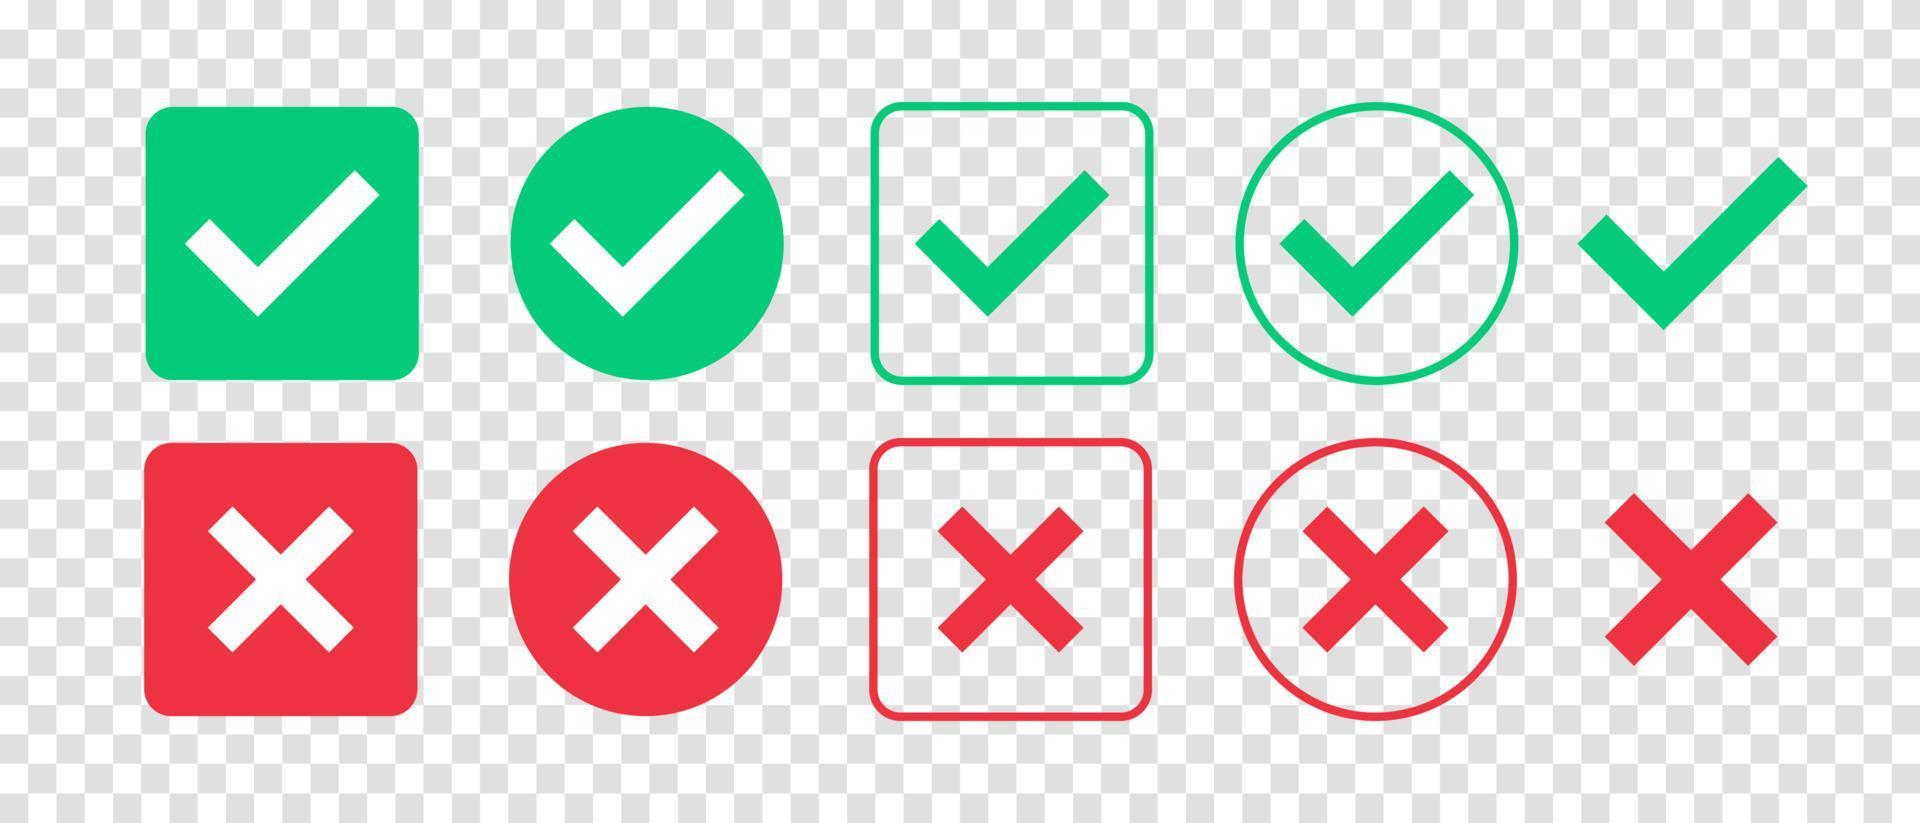 grön bock och röd kryssmarkering ikonuppsättning. isolerade bocksymboler. checklista tecken. godkännandebricka. platt och modern bockdesign. vektor illustration